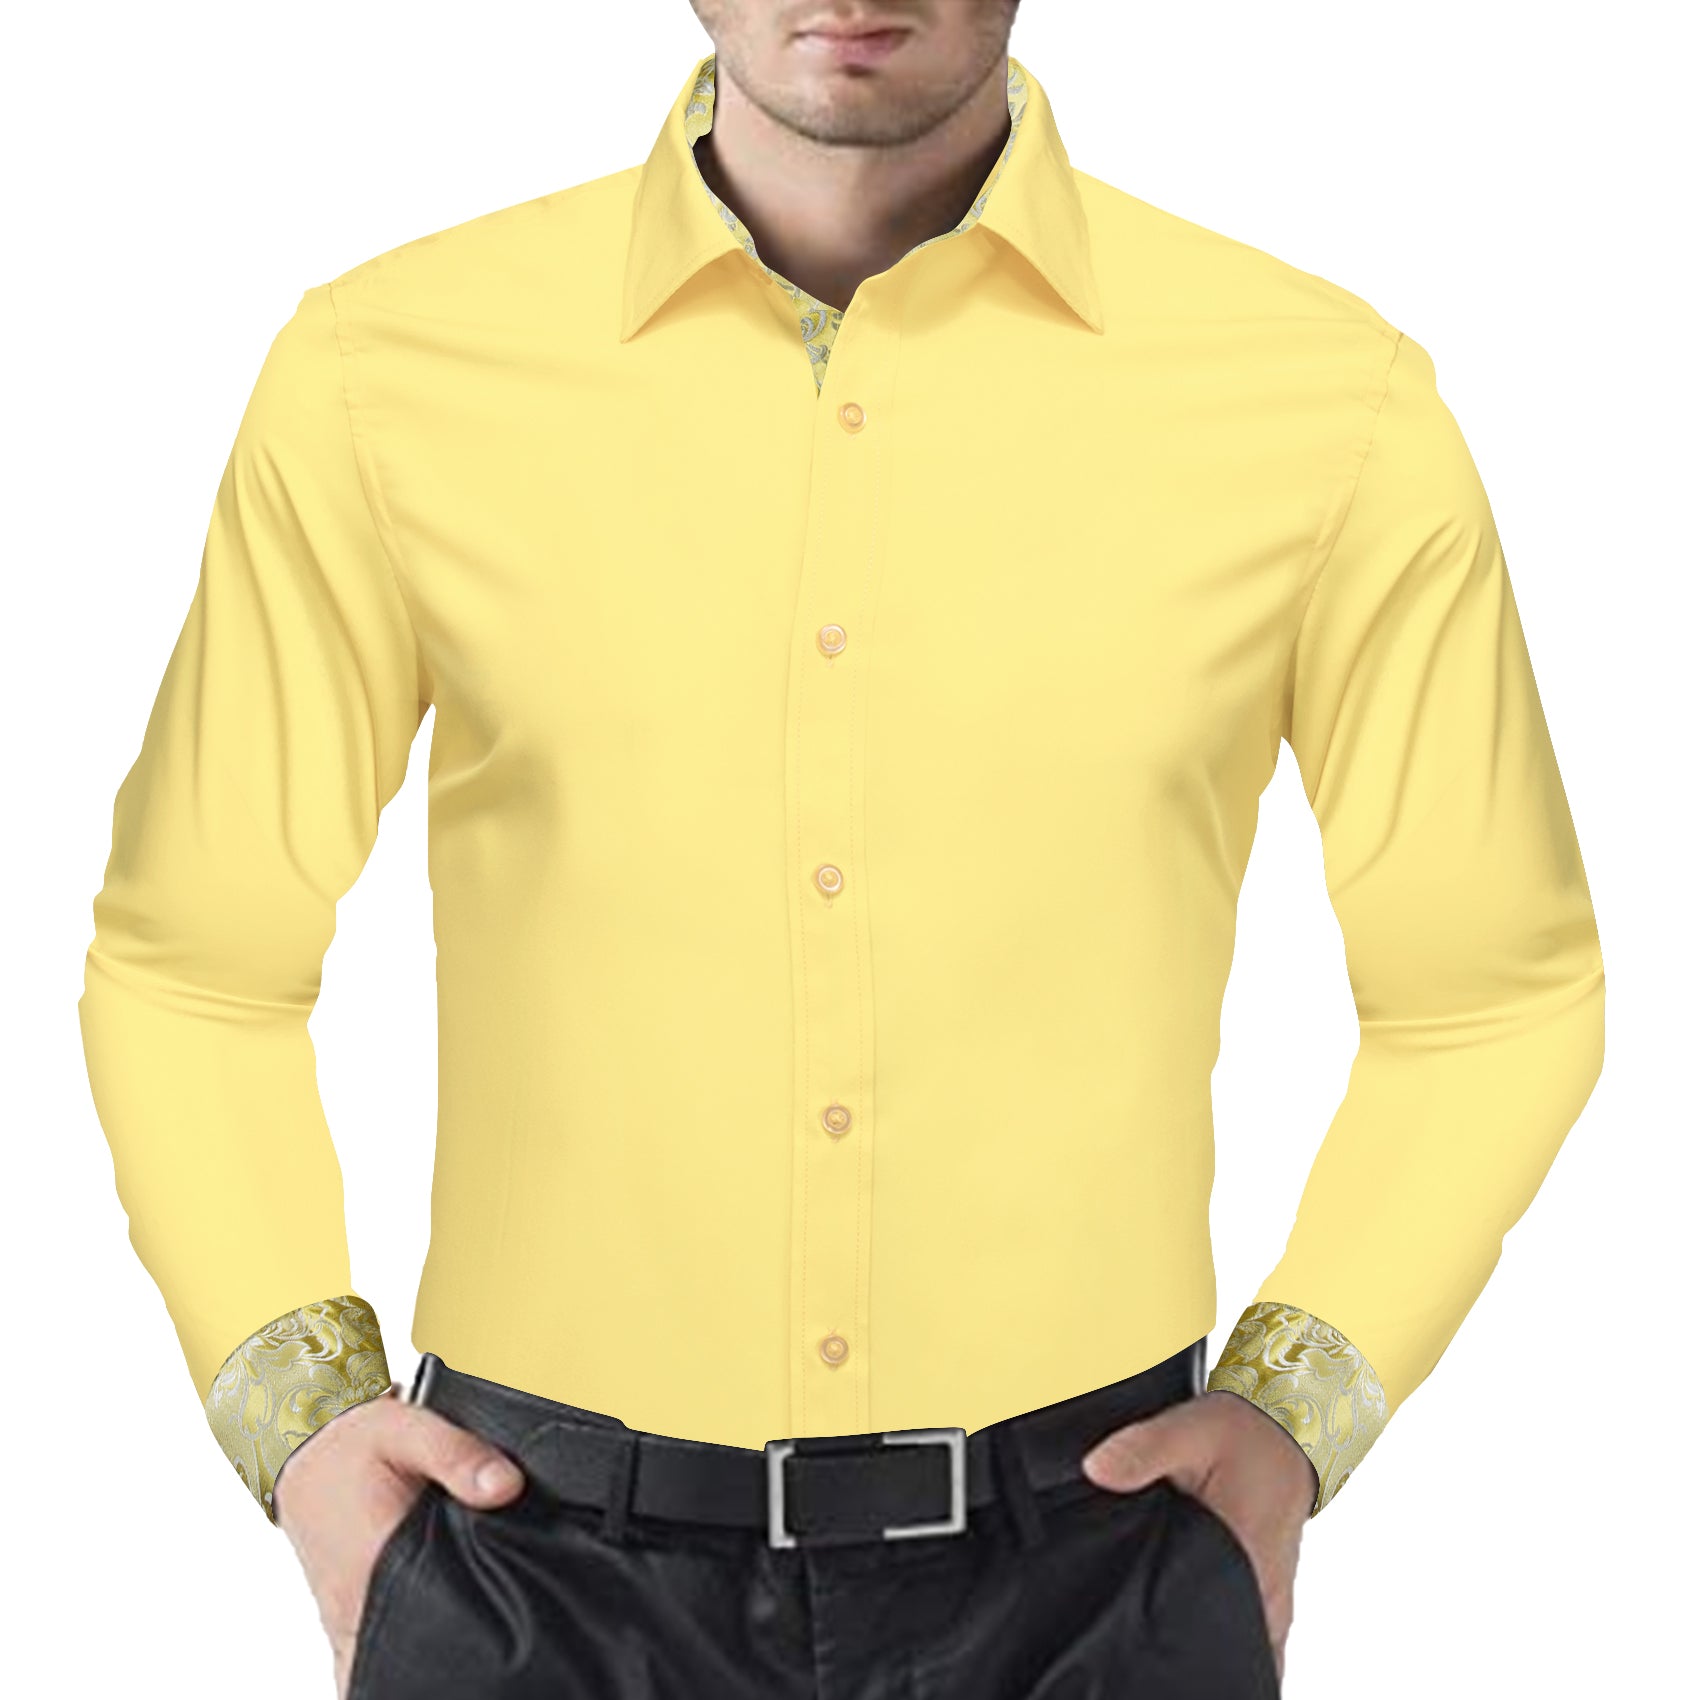 Barry.wang Formal Light Yellow Splicing Men's Business Shirt